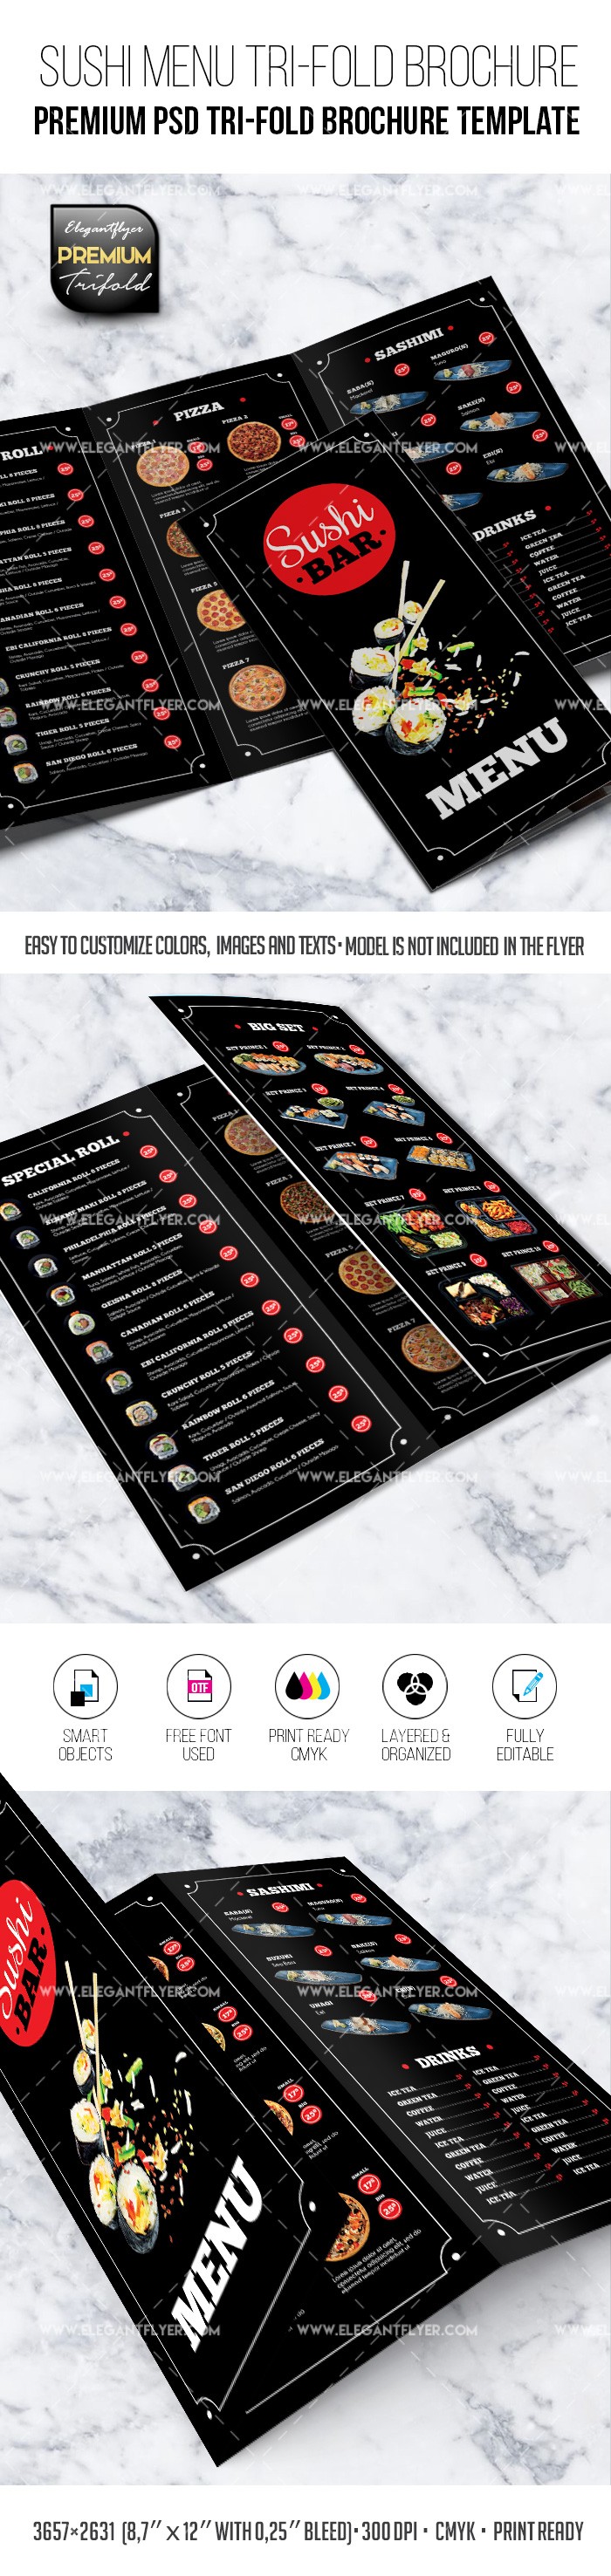 Menu du restaurant de sushi - Modèle de brochure PSD triptyque de première qualité. by ElegantFlyer